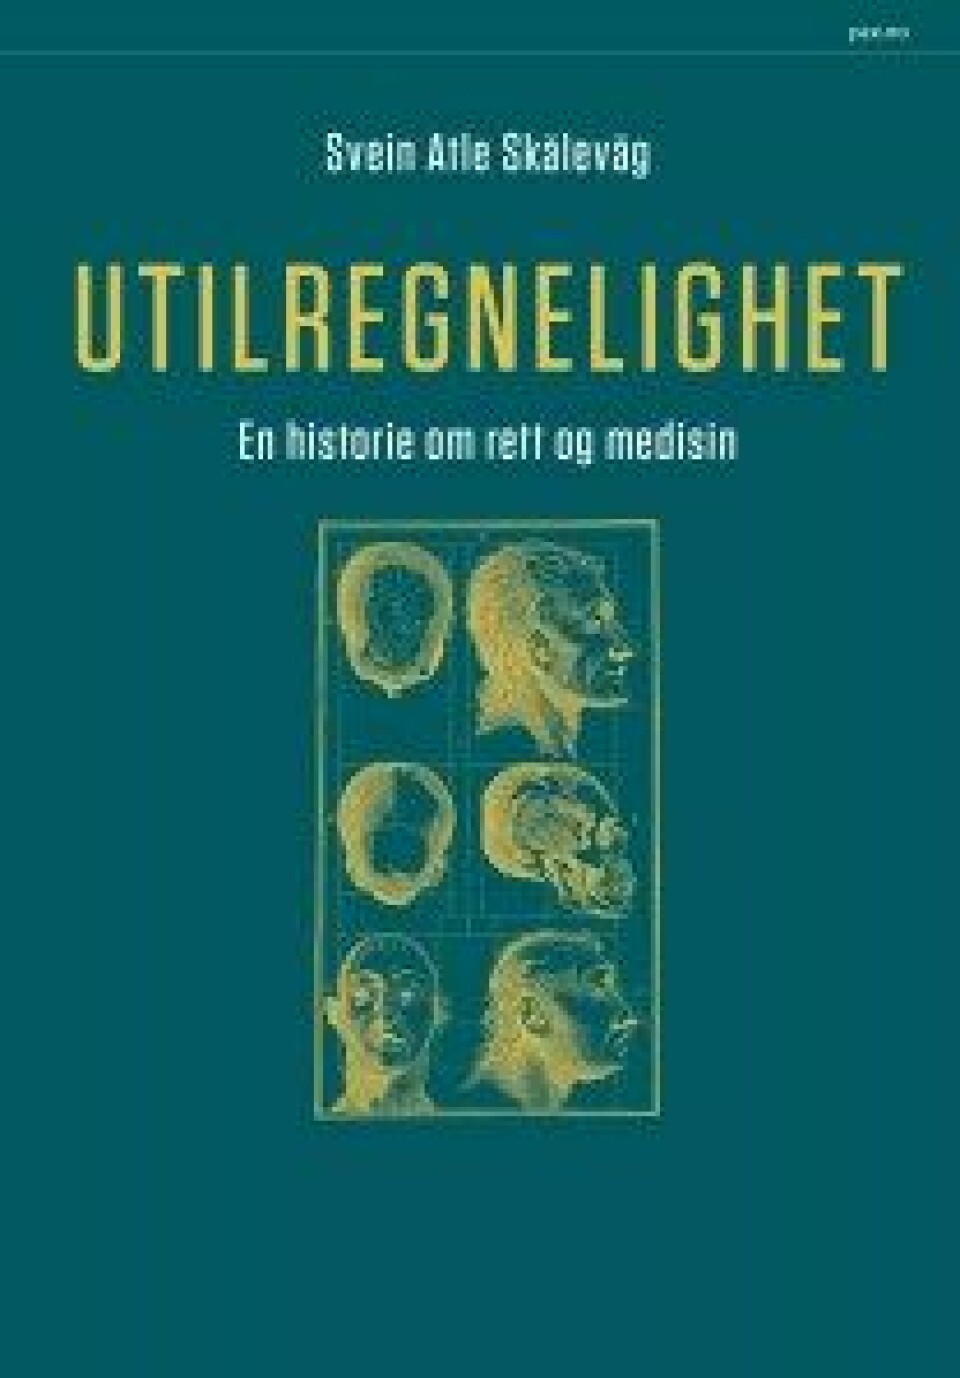 Utilregnelighet. En historie om rett og medisin av Svein Atle Skålevåg, Pax Forlag, 2016.